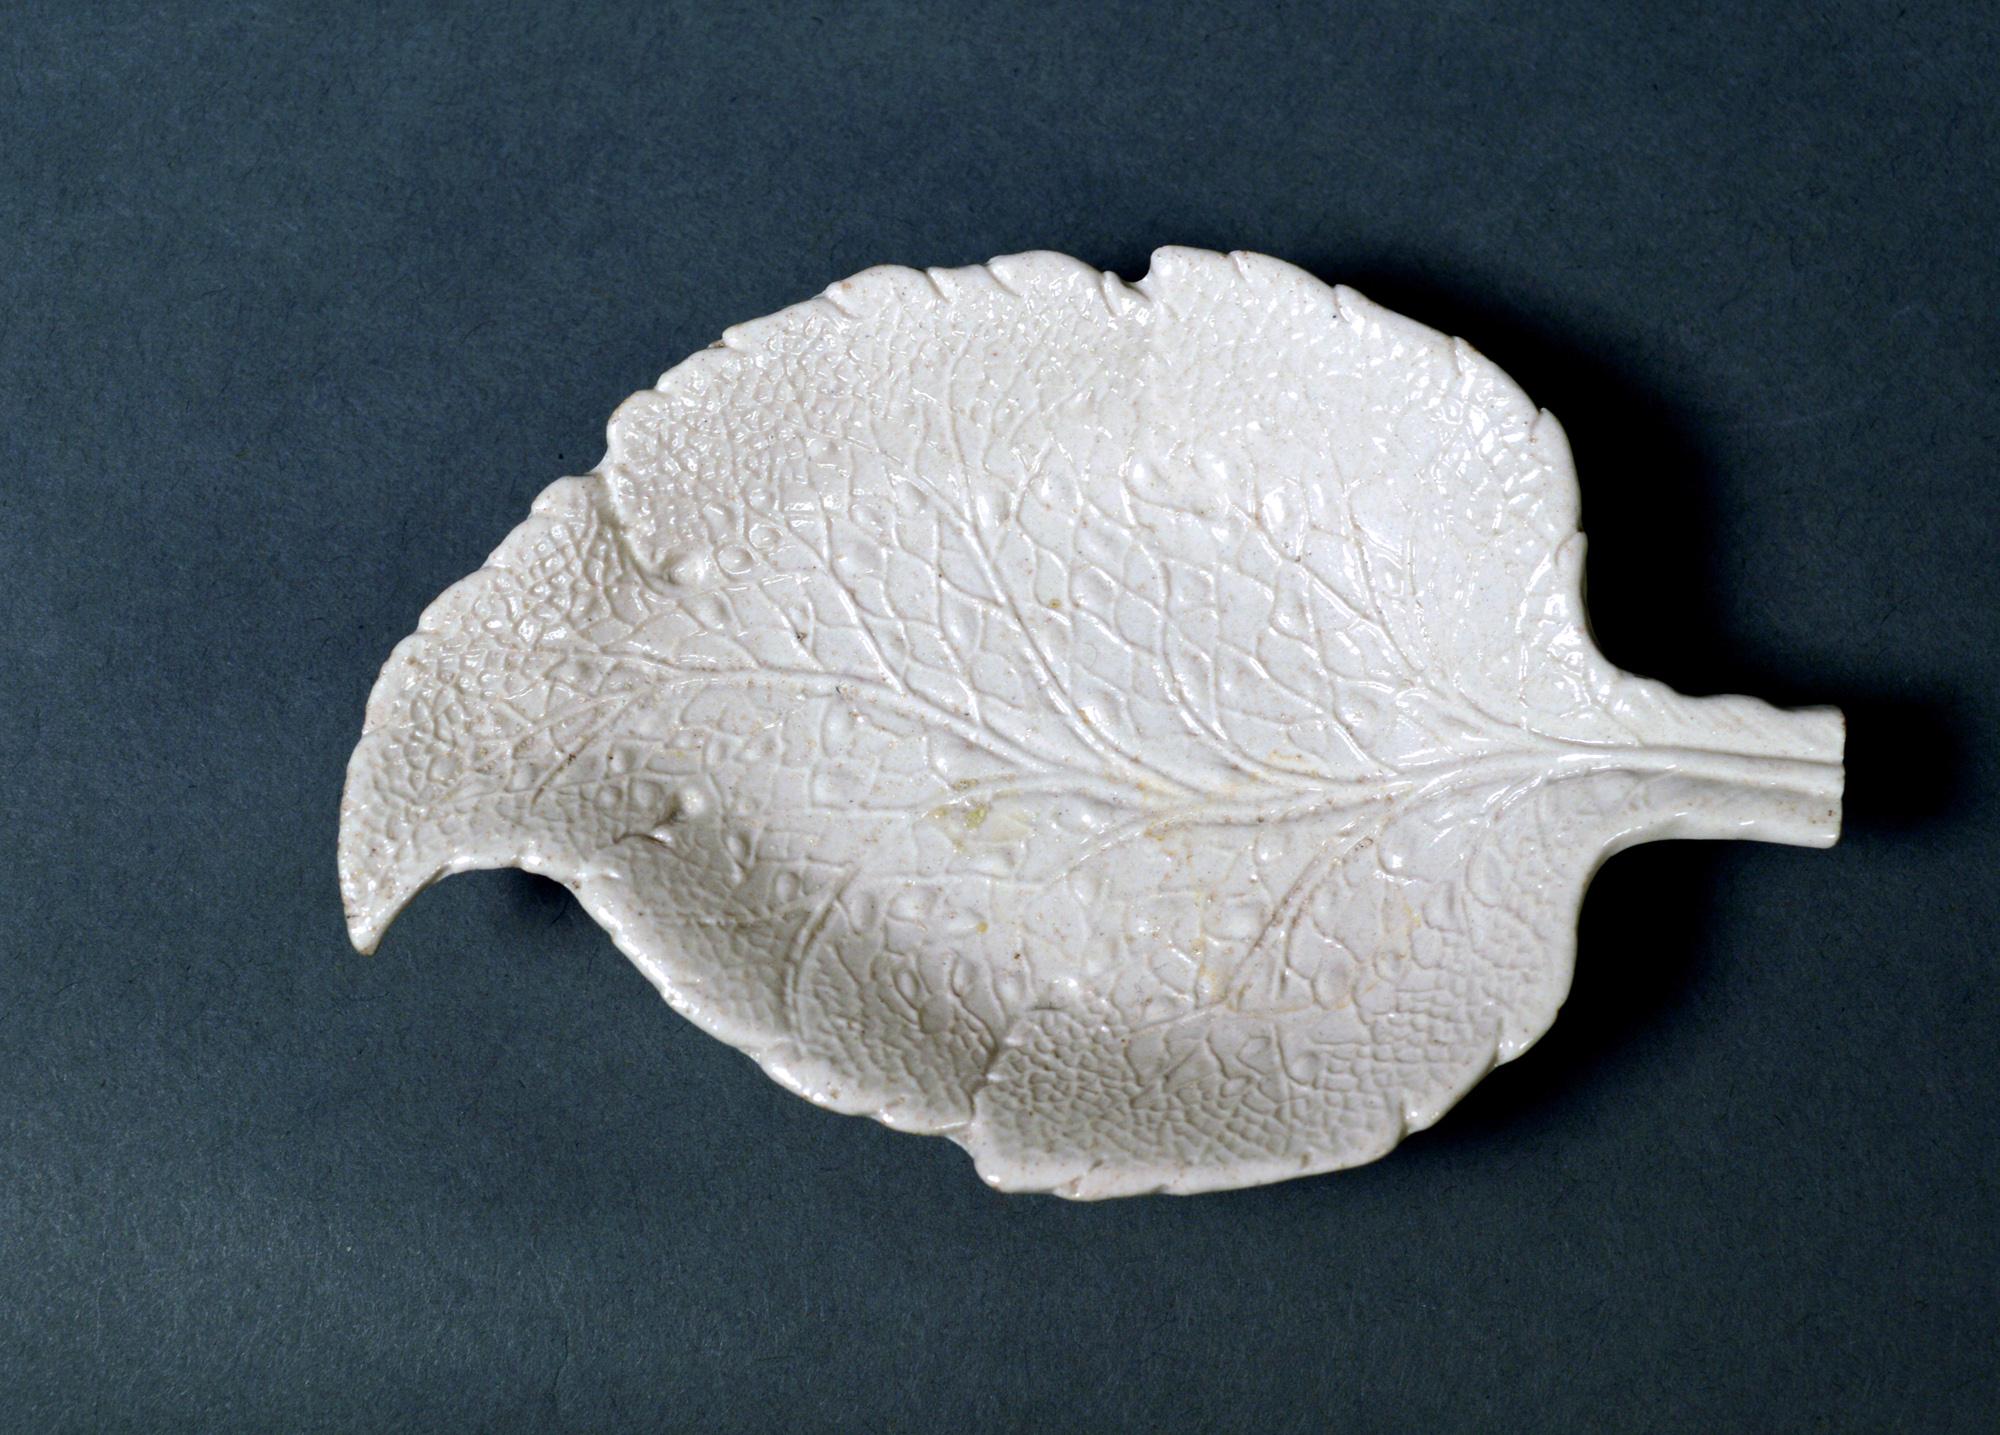 Süßspeisenschalen aus Steingut mit Salzglasur in Form von Weinblättern,
ein Paar,
um 1745-1765 
 

Die Schalen aus Steingut mit Salzglasur aus Staffordshire haben die Form eines Weinblatts und sind am oberen Ende des Blattes gebogen und haben